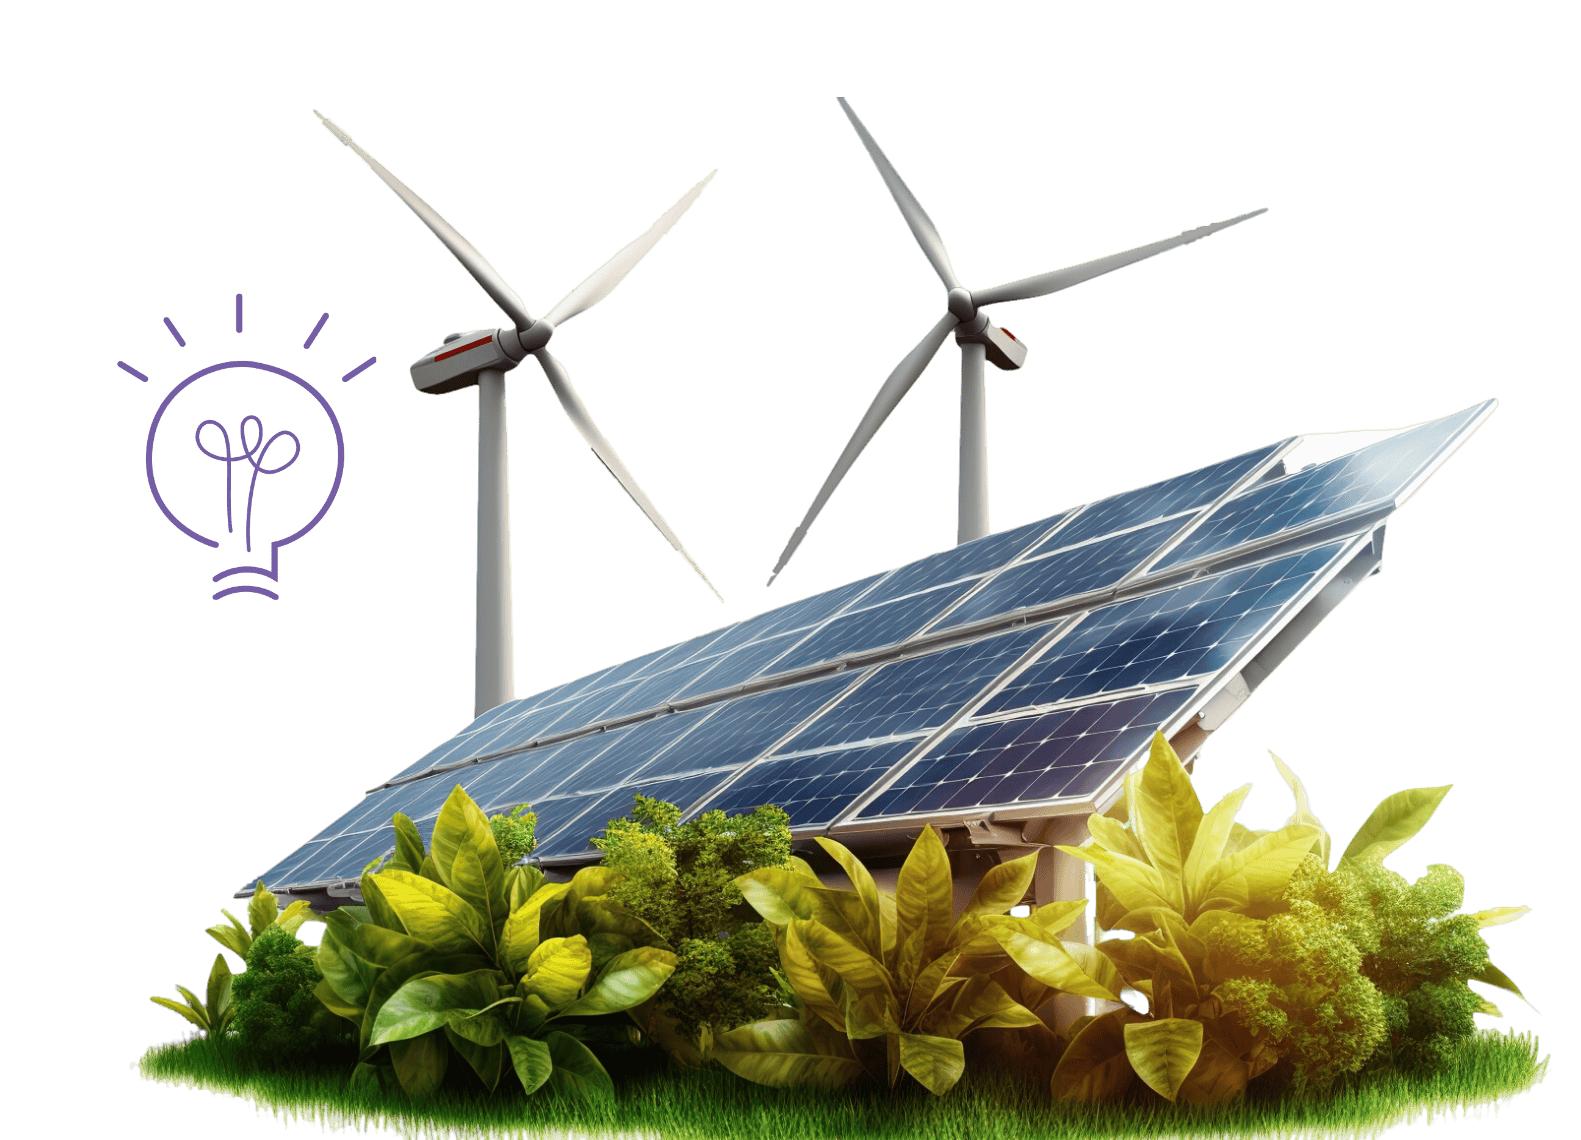 Insurance of alternative energy